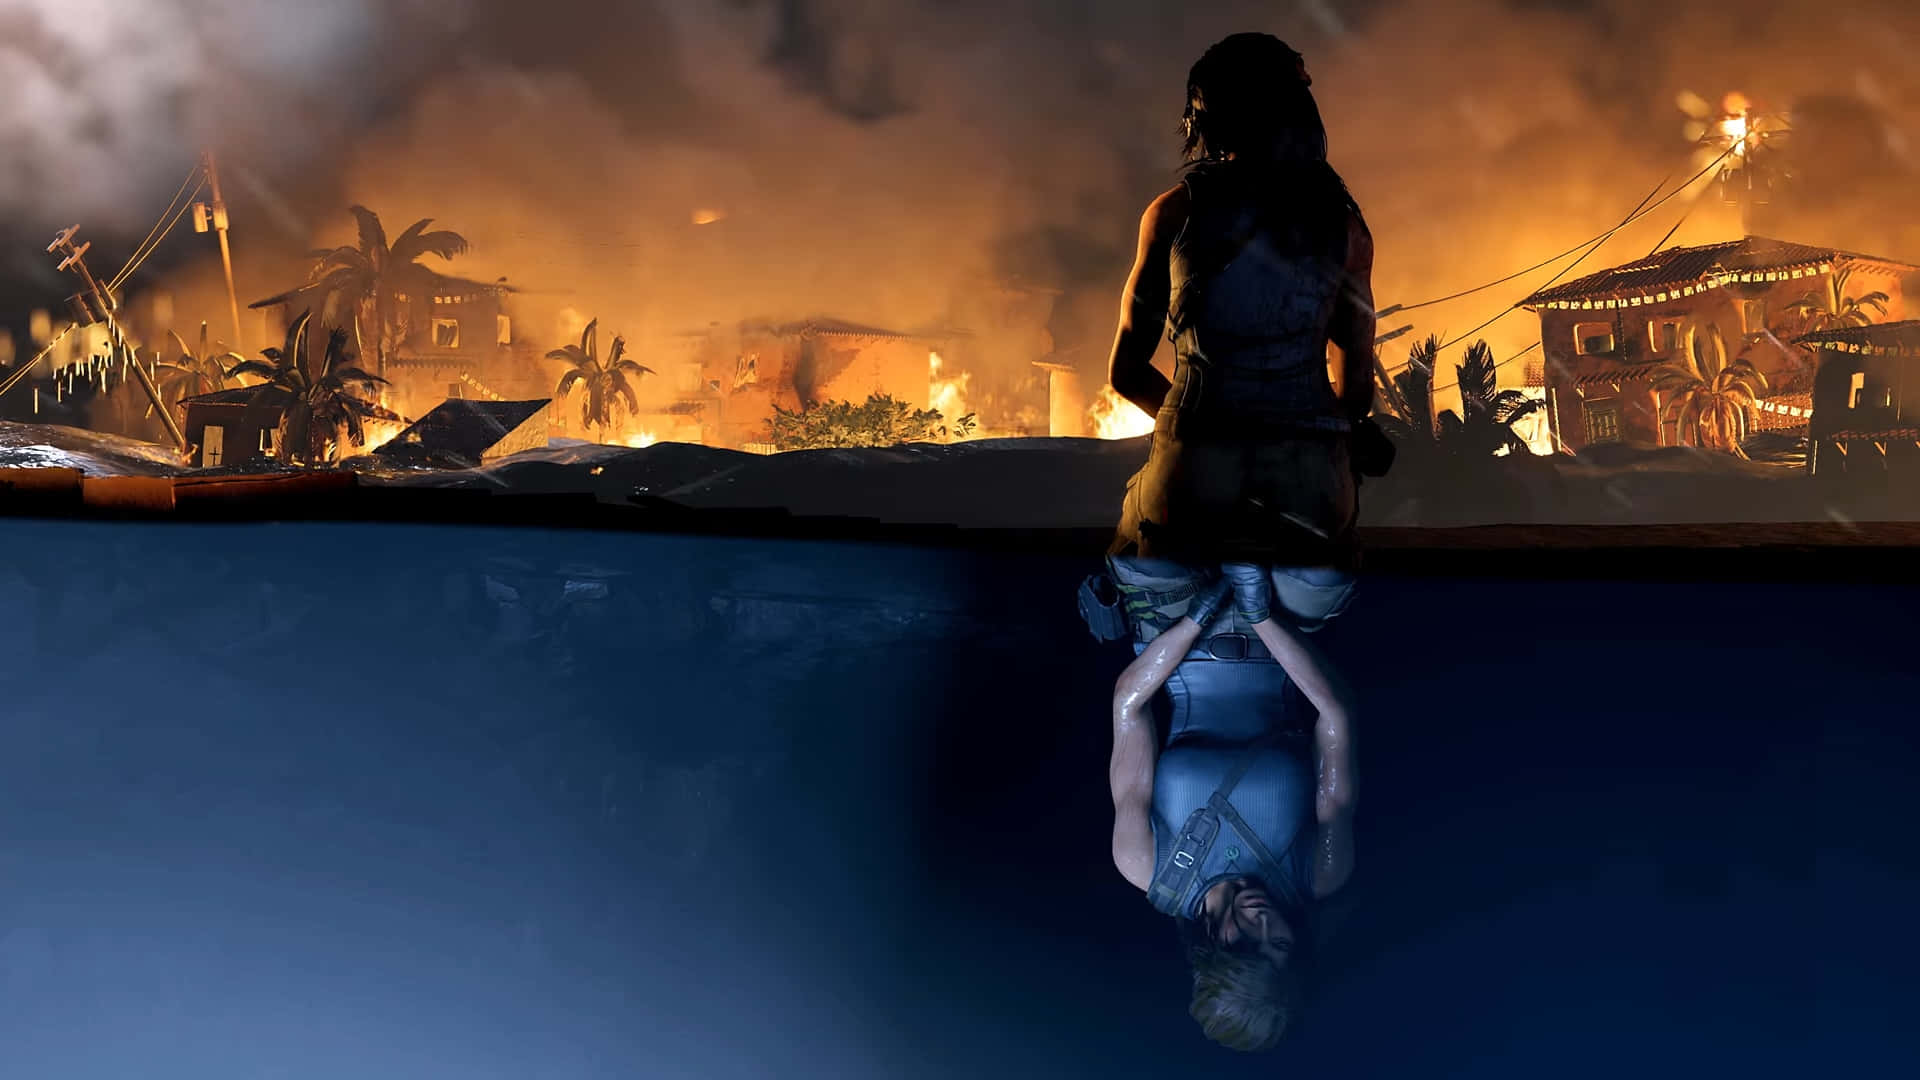 Laracroft Si Prepara Ad Esplorare Delle Tombe Pericolose In Shadow Of The Tomb Raider.